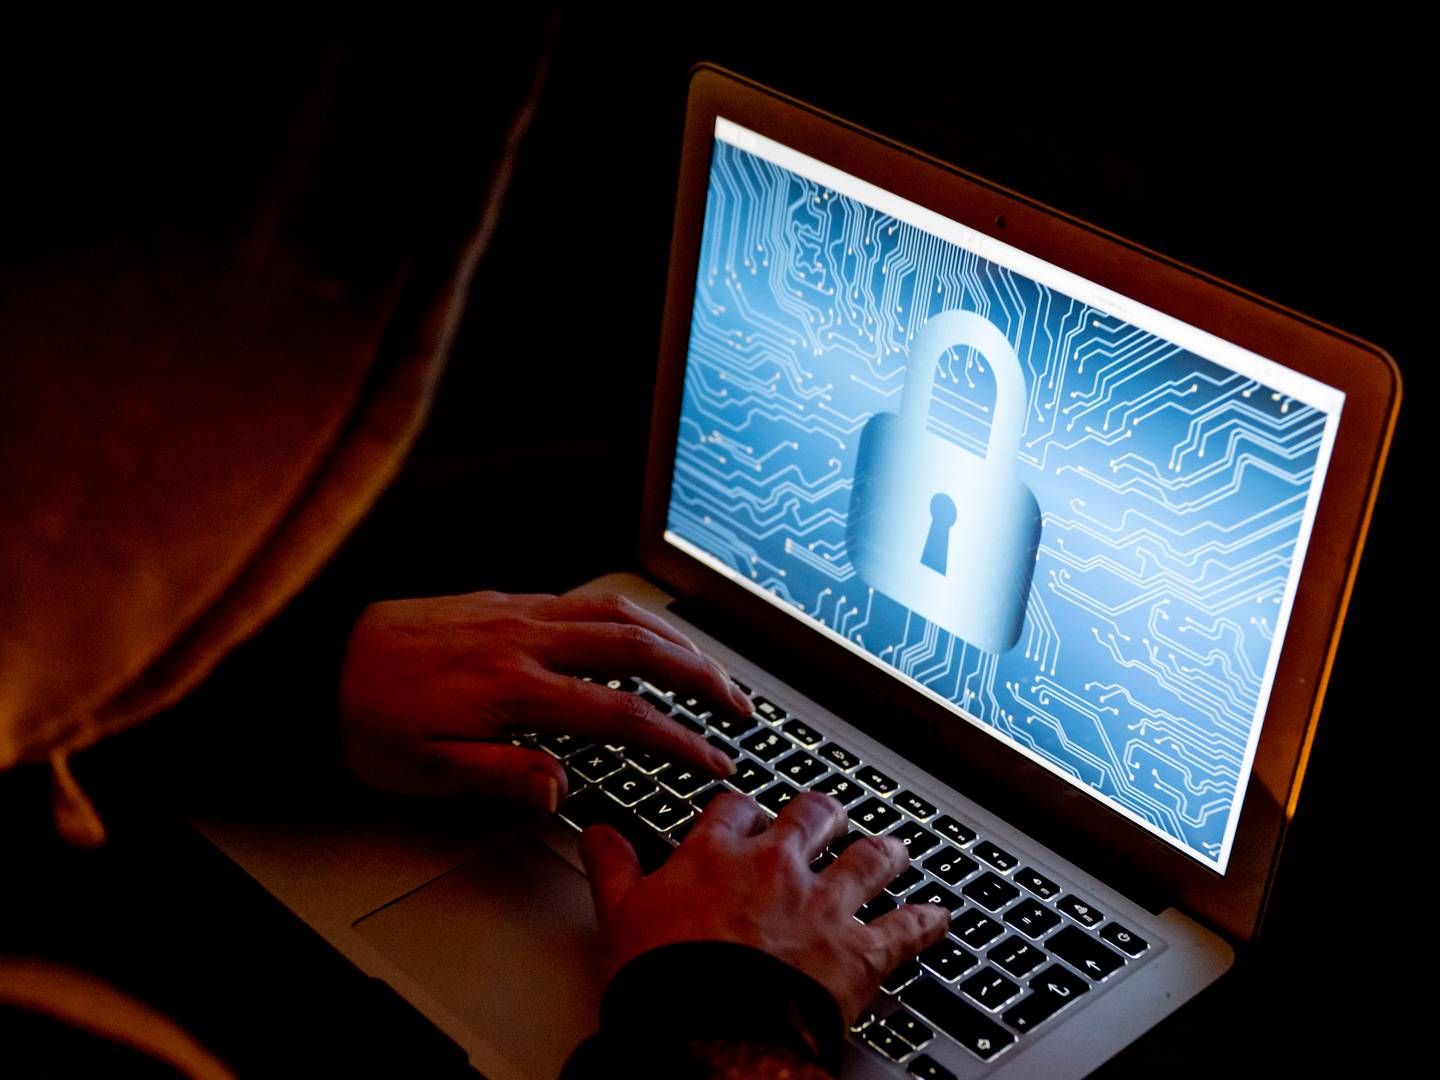 Hacker zielen eher auf Banken, nicht auf Cloud-Anbieter. | Foto: picture alliance / ROBIN UTRECHT | ROBIN UTRECHT